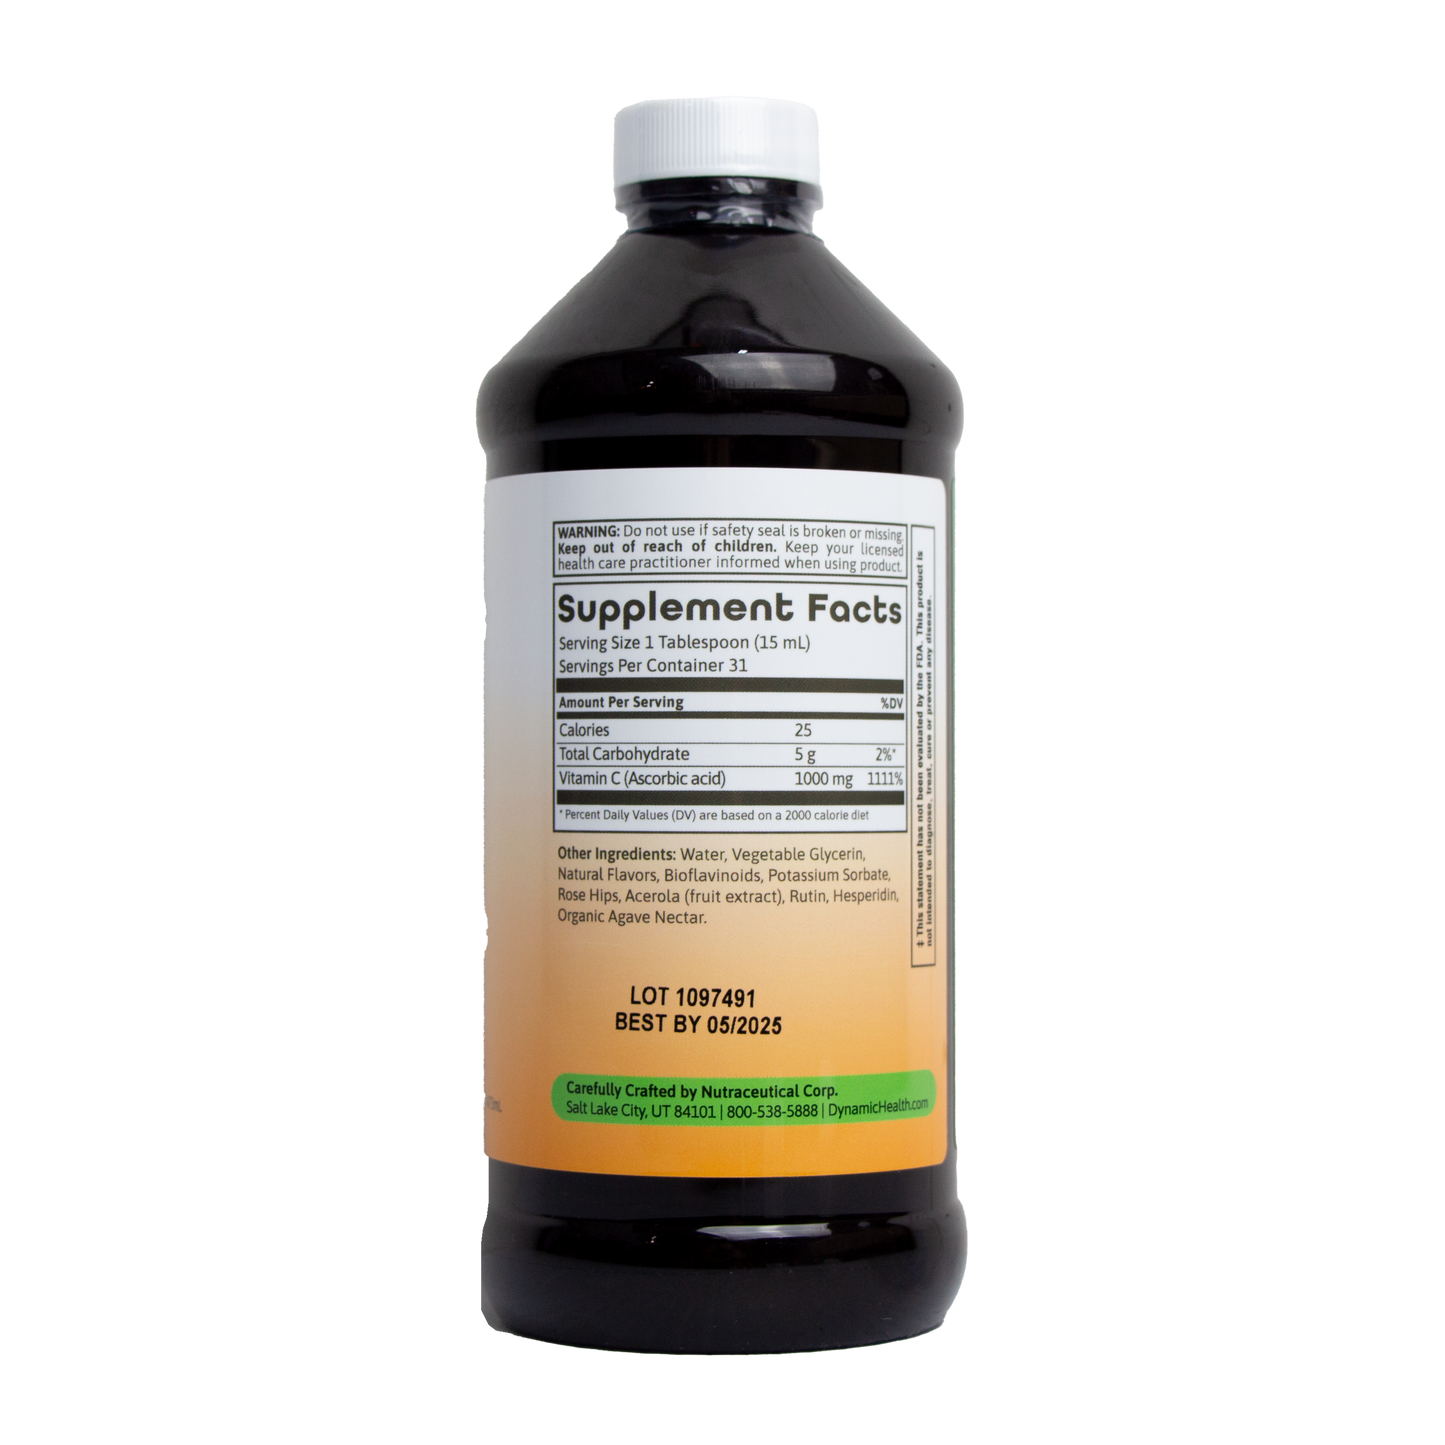 Dynamic Health - Liquid Vitamin C